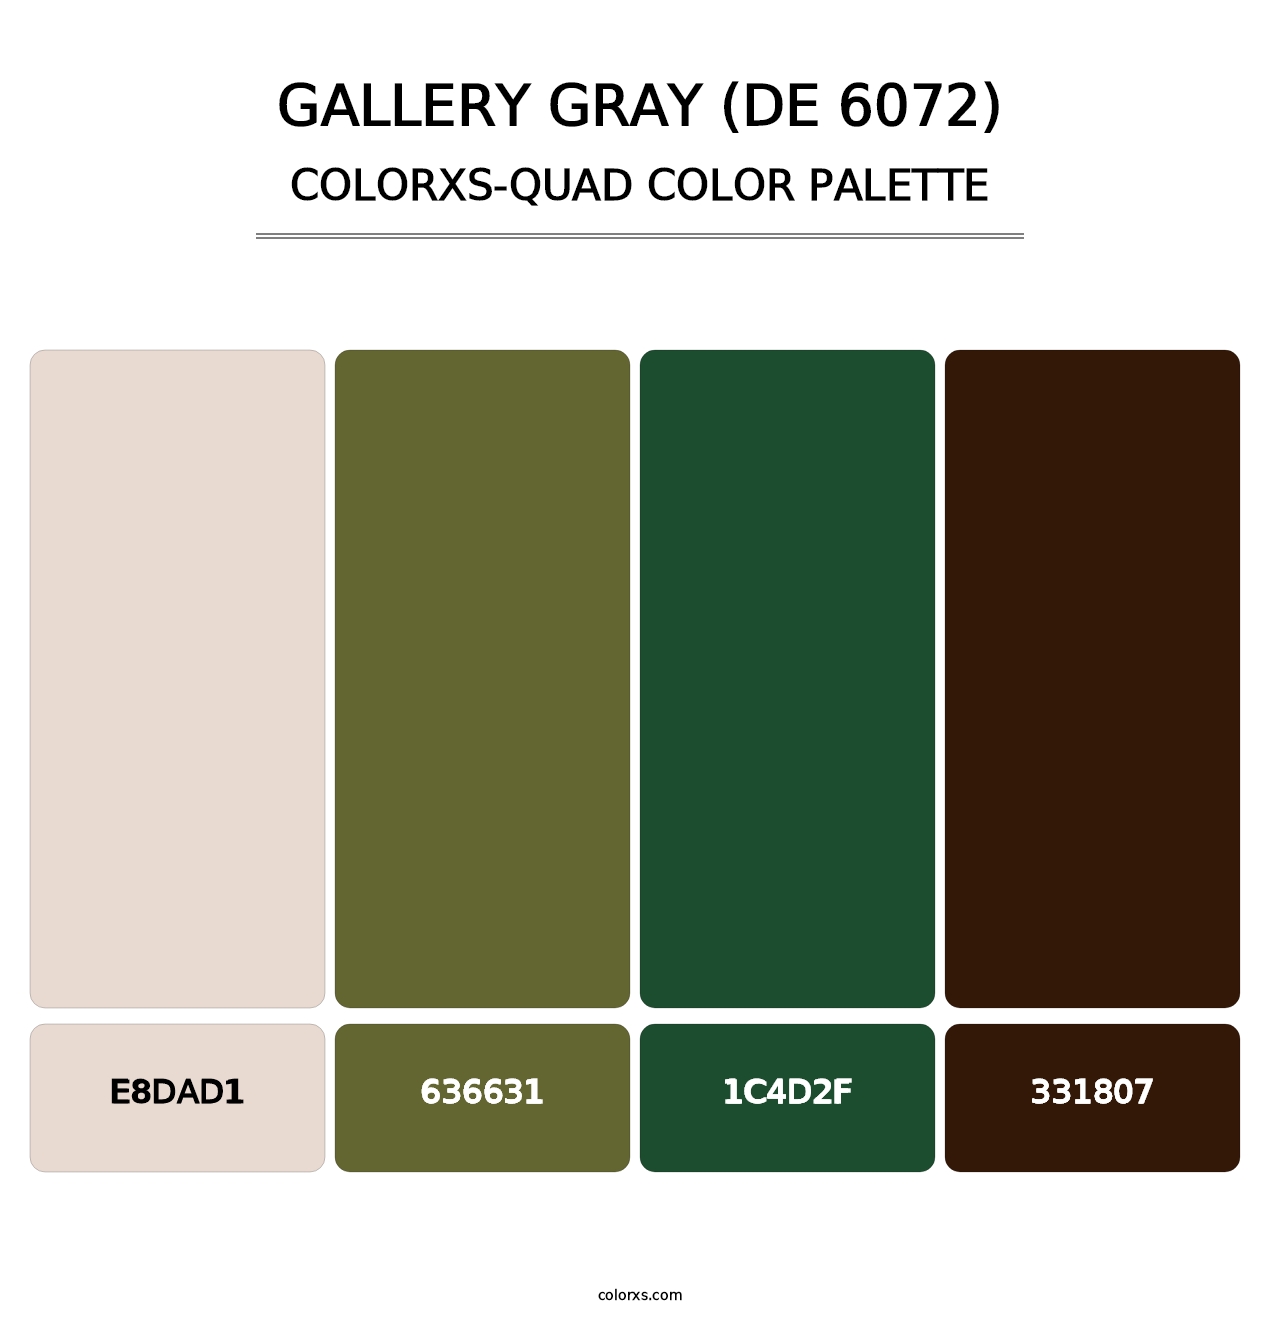 Gallery Gray (DE 6072) - Colorxs Quad Palette